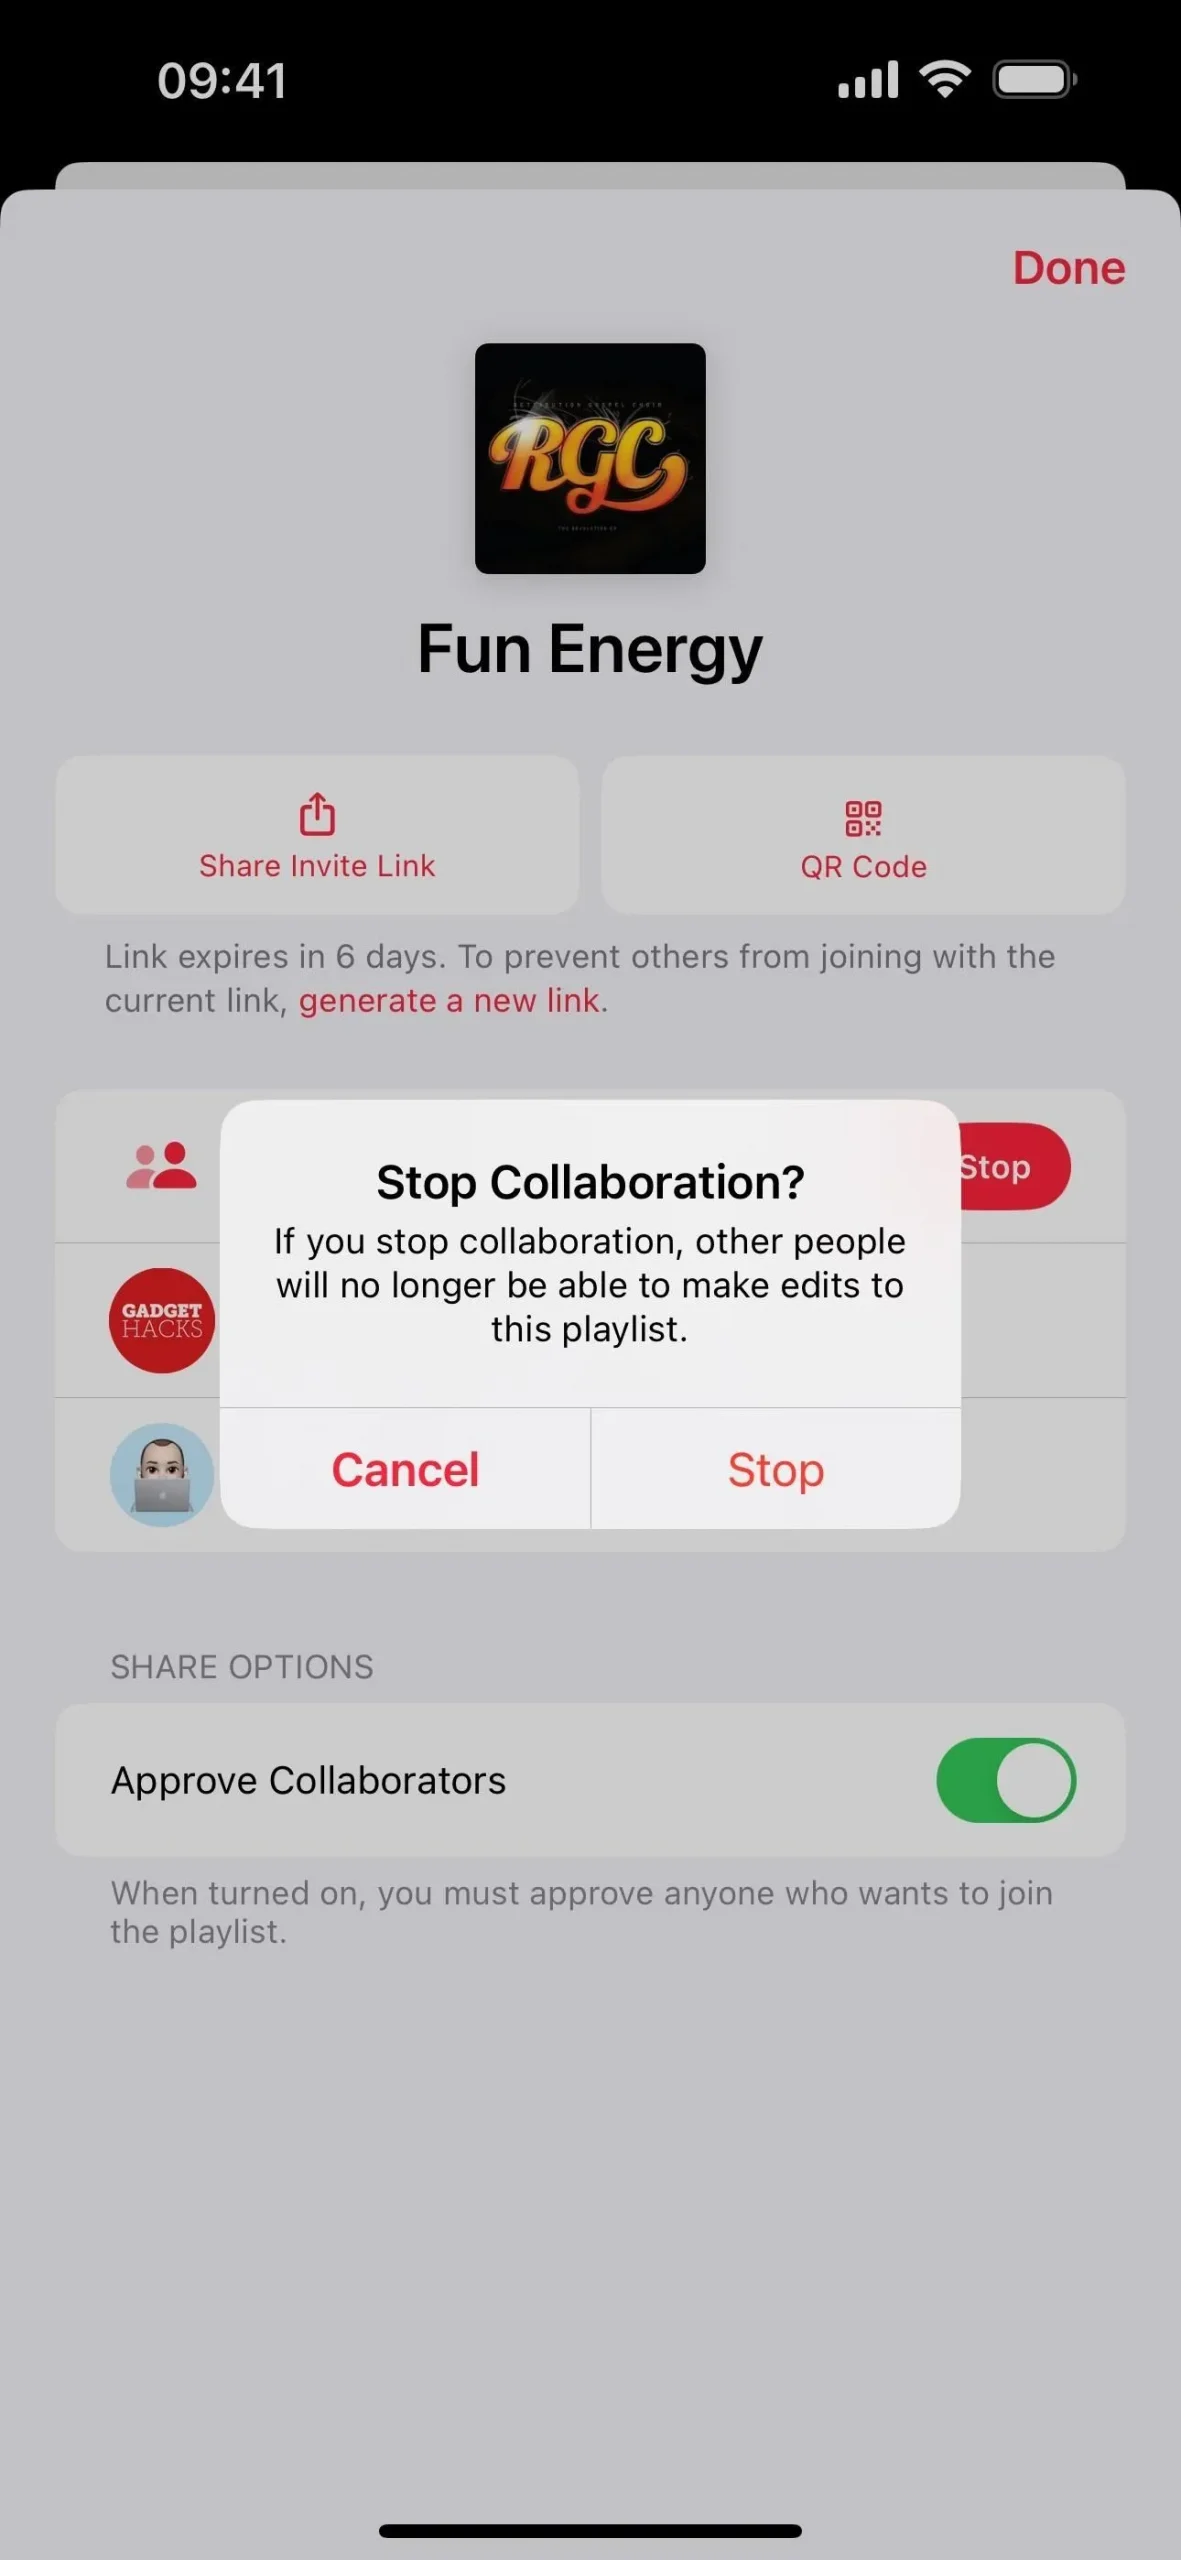 Sie können jetzt mit Ihren Freunden eine gemeinsame Playlist auf Apple Music erstellen – so funktioniert es